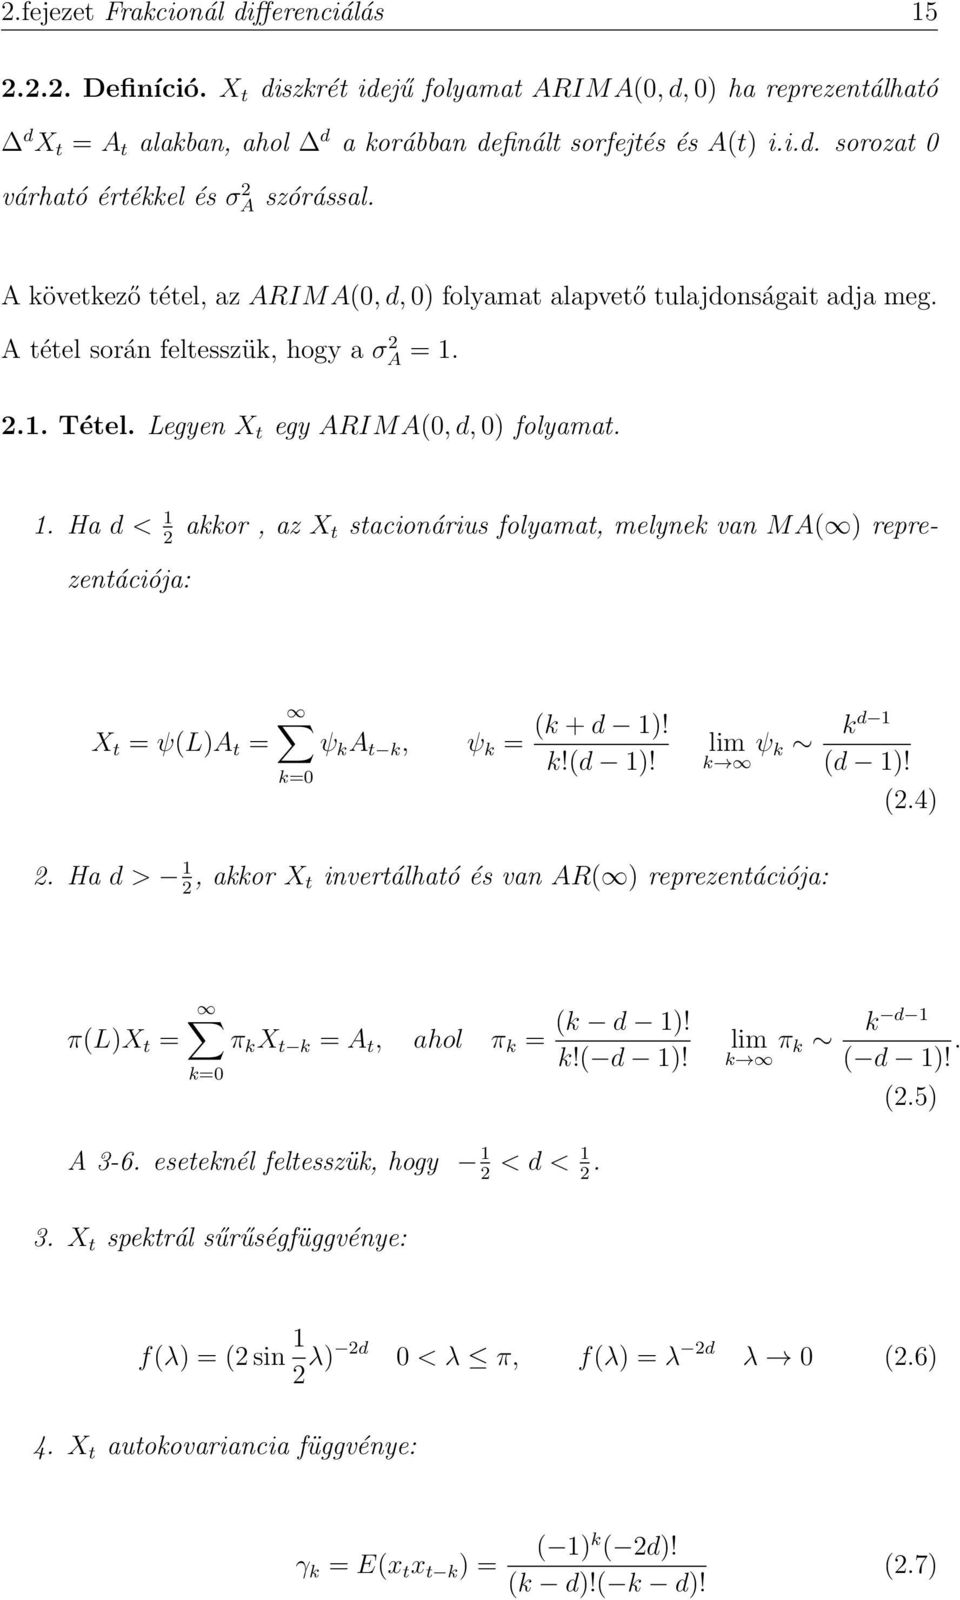 2.1. Tétel. Legyen X t egy ARIMA(0, d, 0) folyamat. 1. Ha d < 1 2 akkor, az X t stacionárius folyamat, melynek van MA( ) reprezentációja: X t = ψ(l)a t = ψ k A t k, ψ k = k=0 (k + d 1)! k!(d 1)!